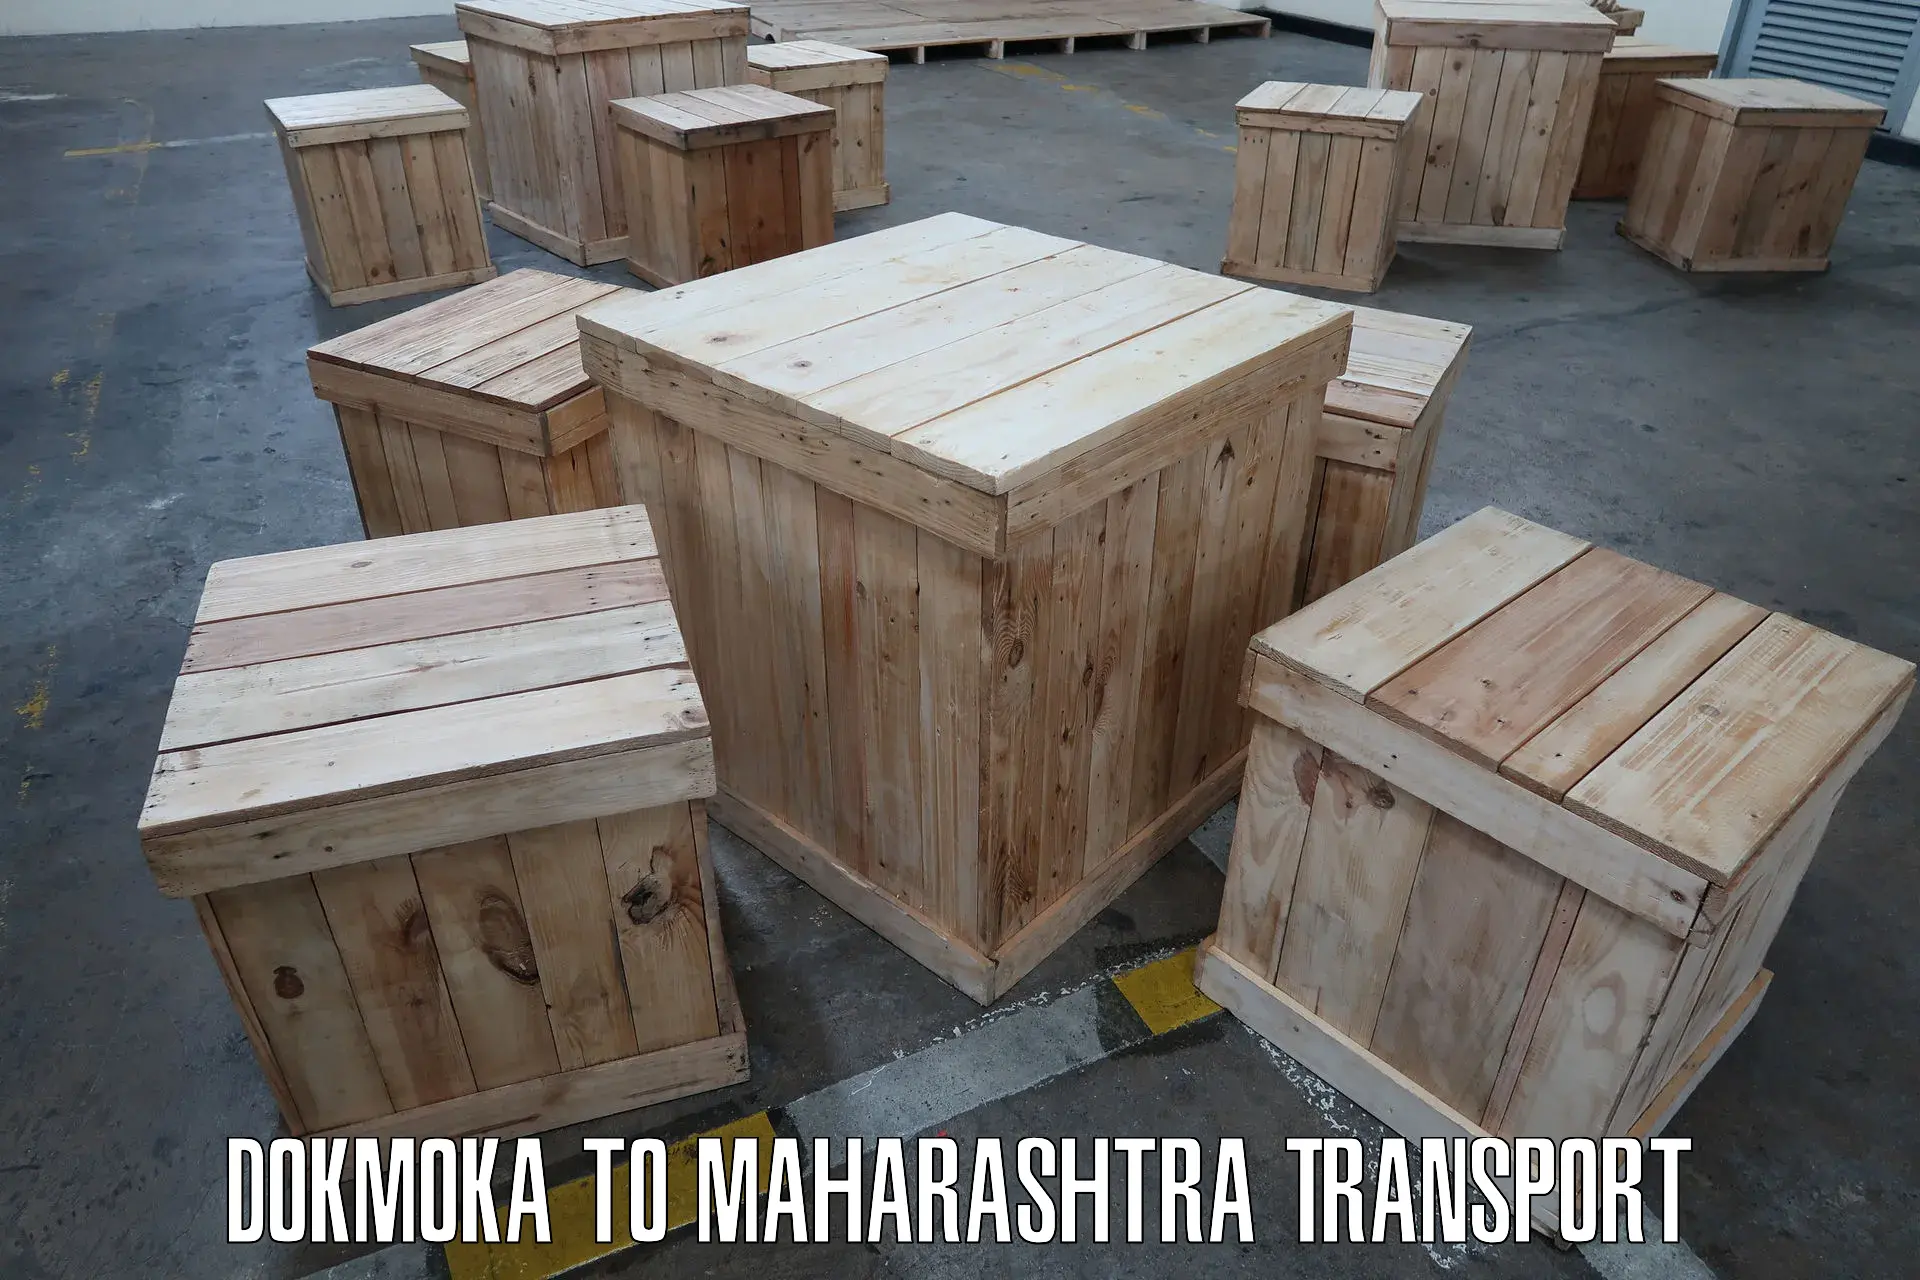 Truck transport companies in India Dokmoka to Mahagaon